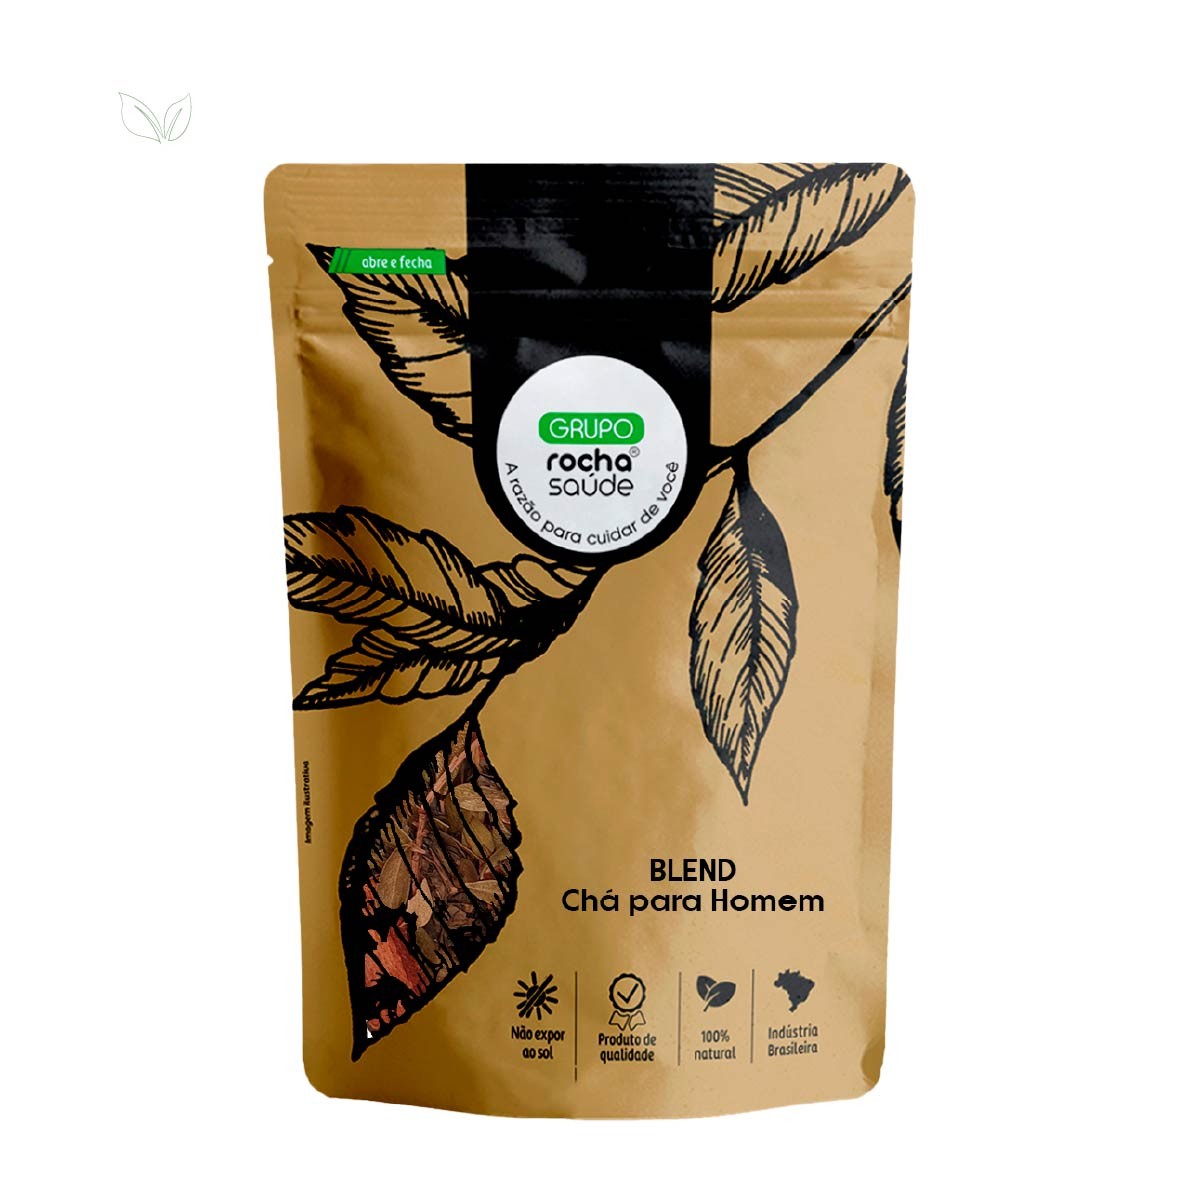 Blend - Chá para Homem - 100% Natural - Alta Qualidade